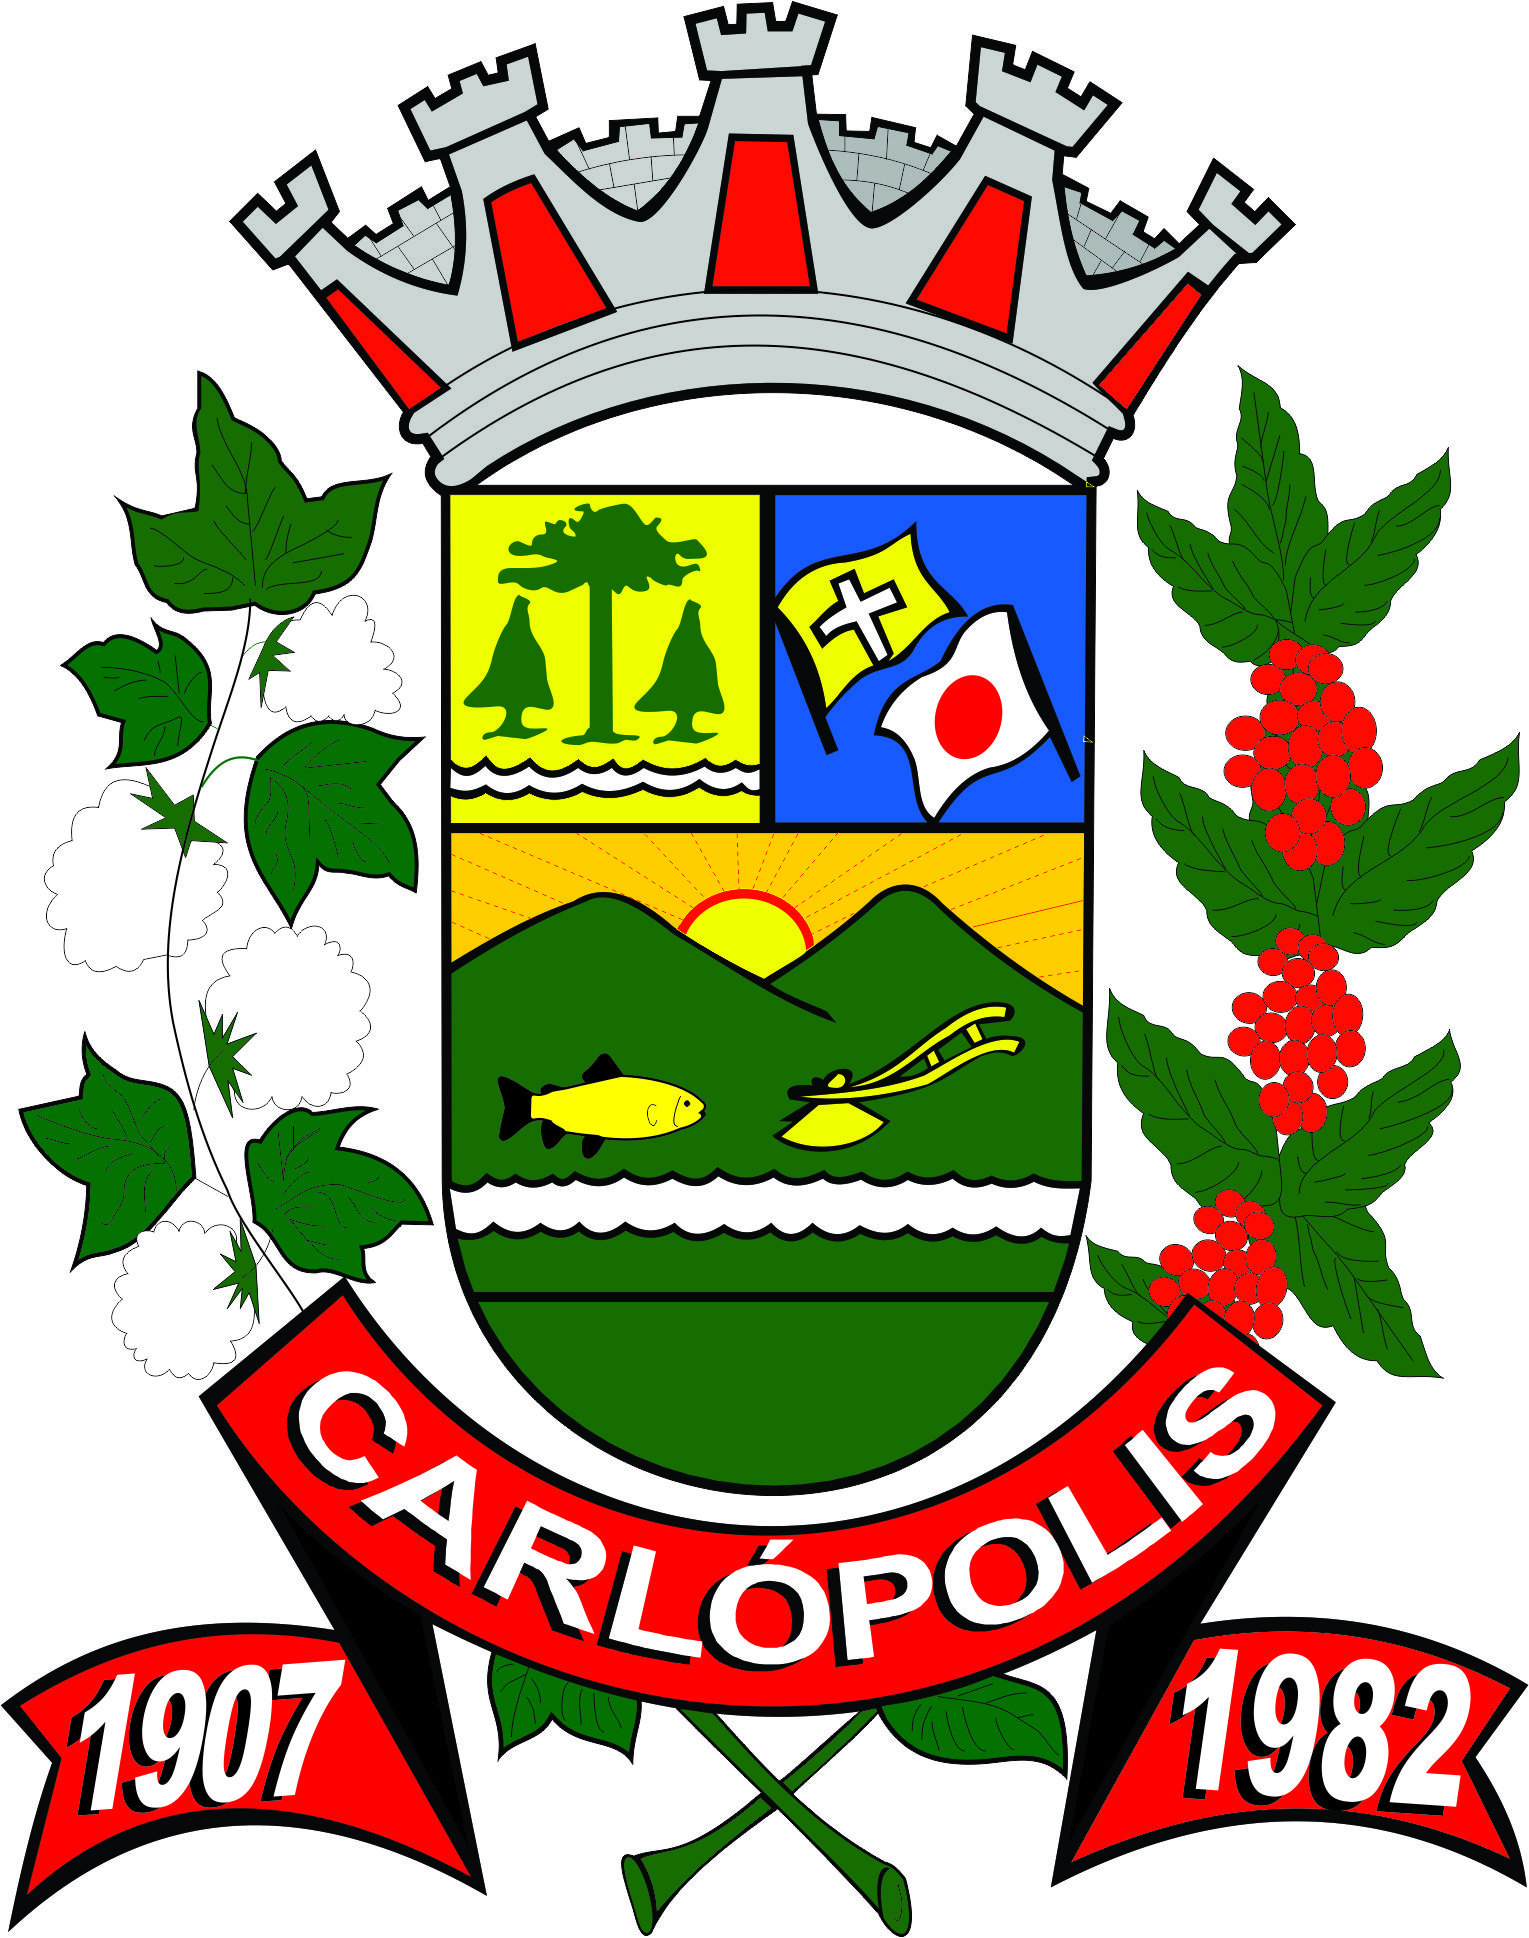 Carlópolis